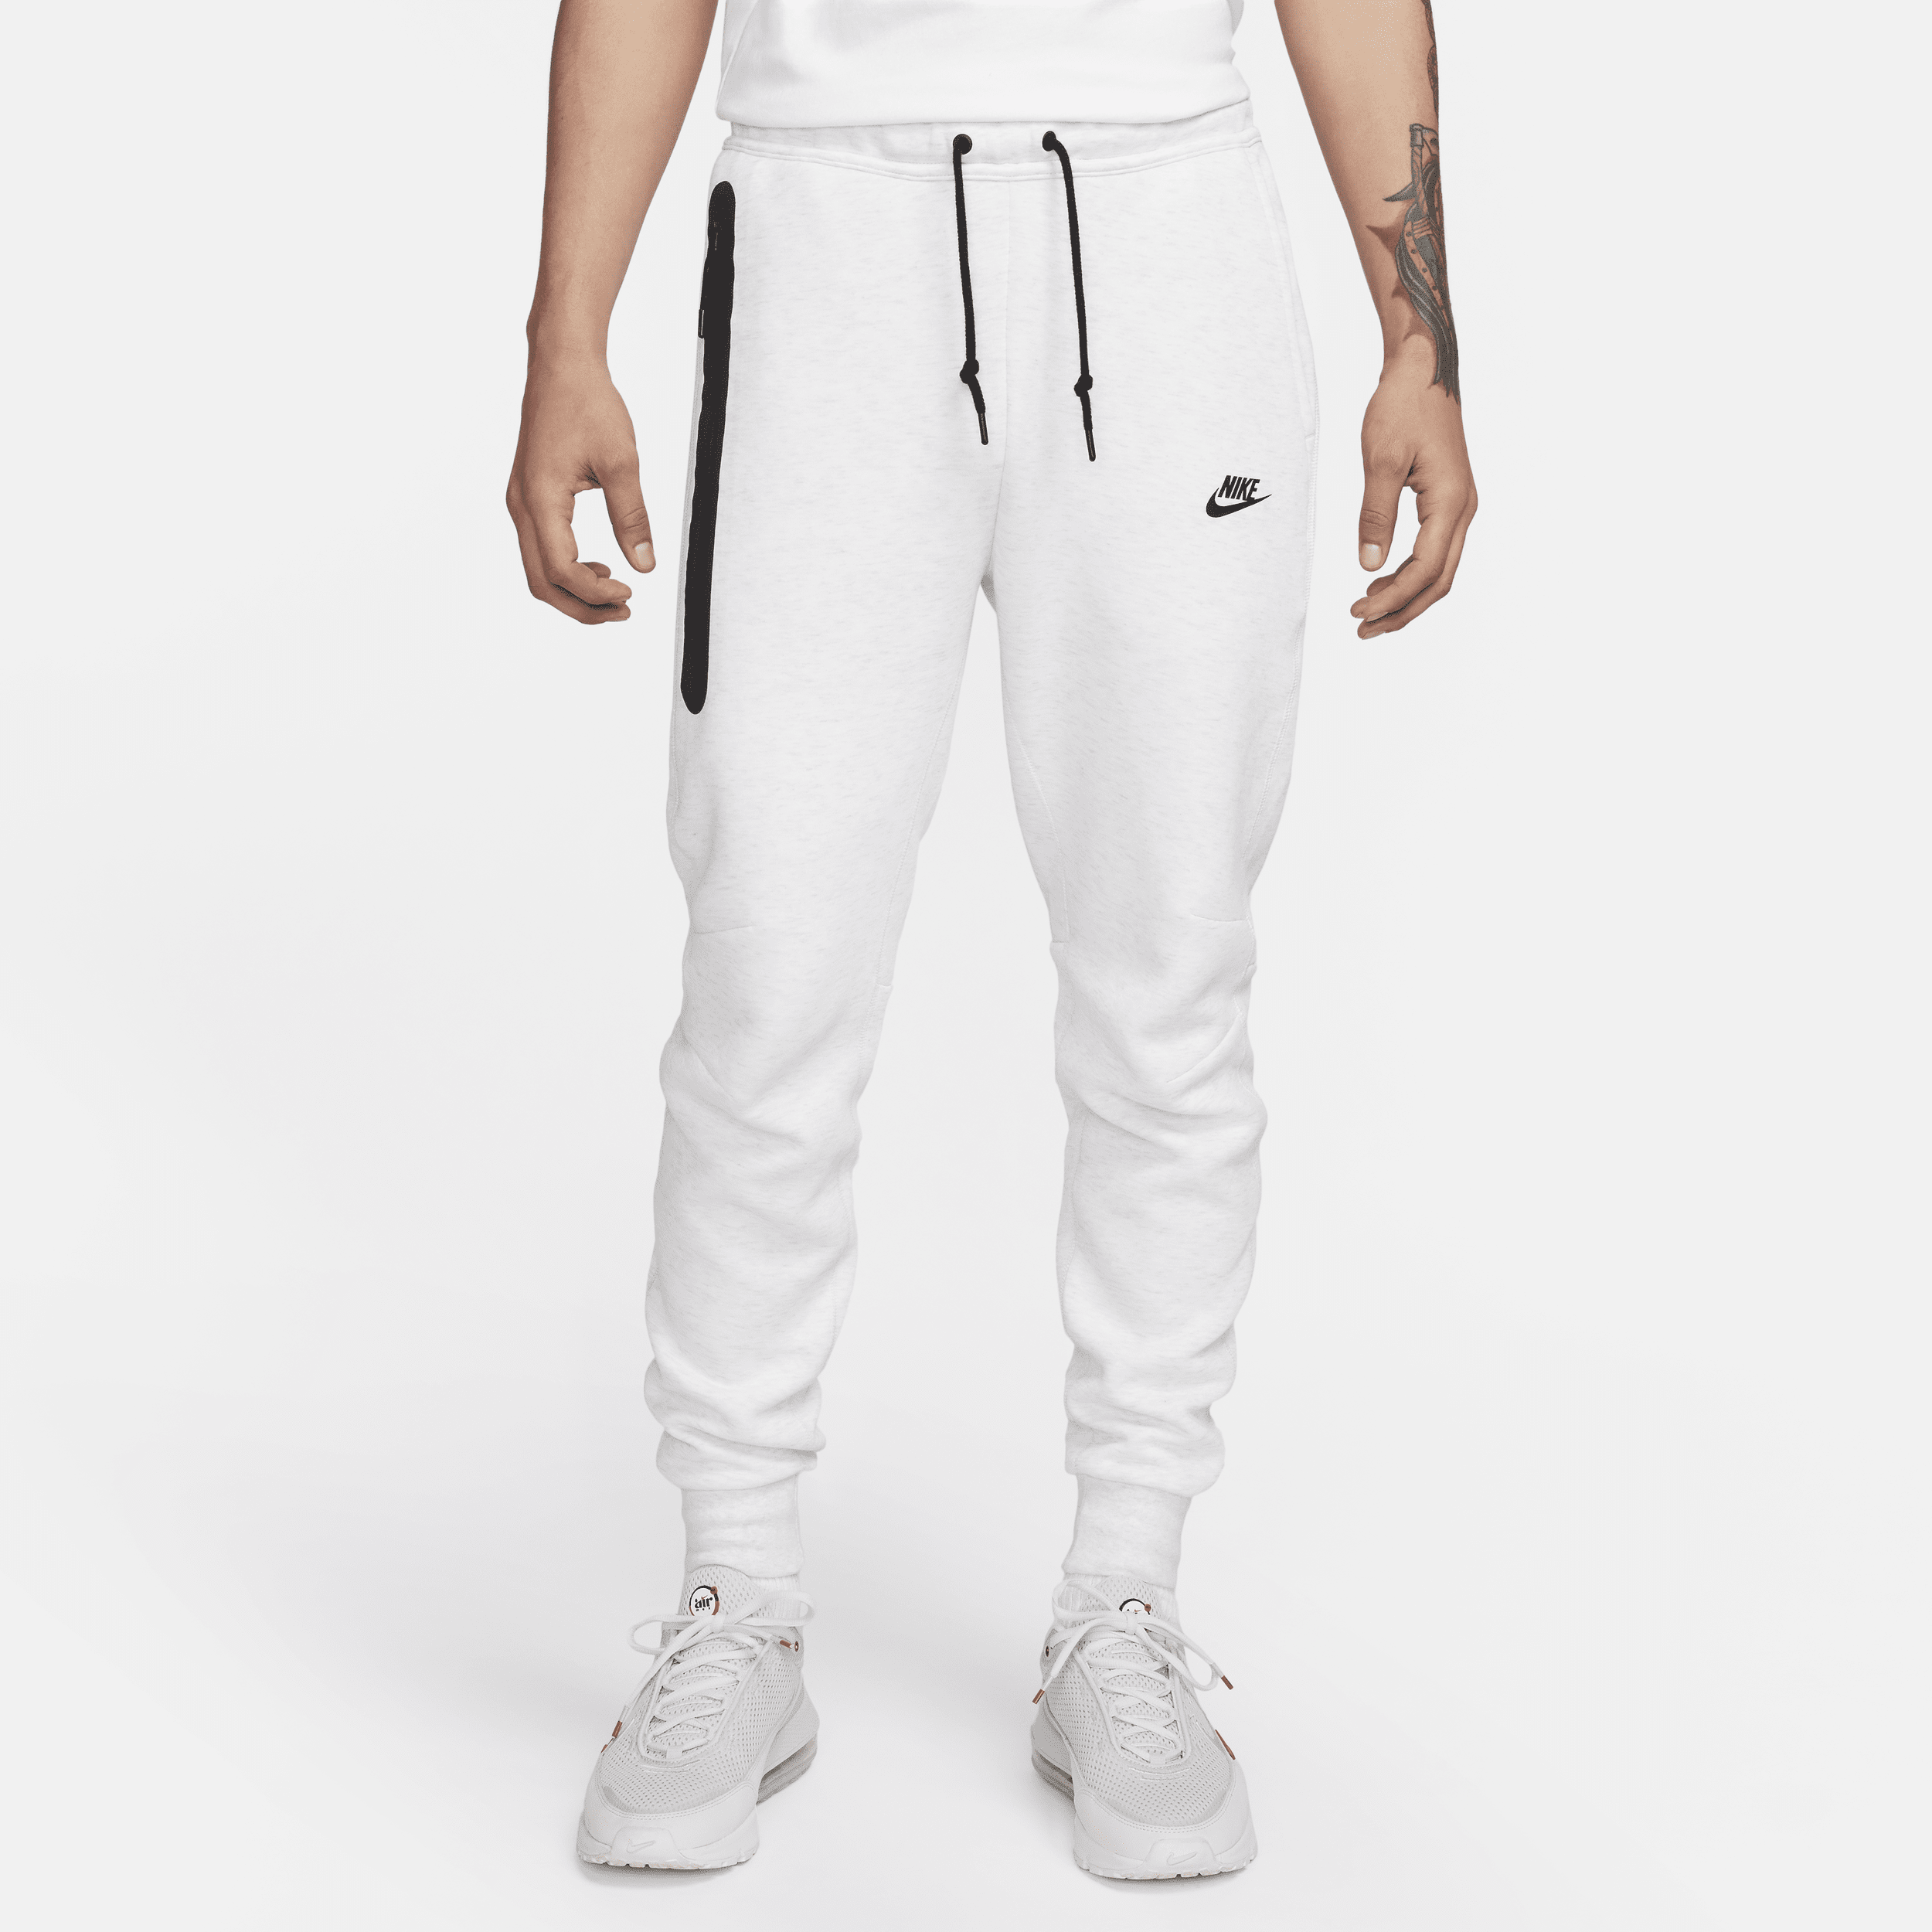 Nike Sportswear Tech Fleece Joggingbroek voor heren - Bruin